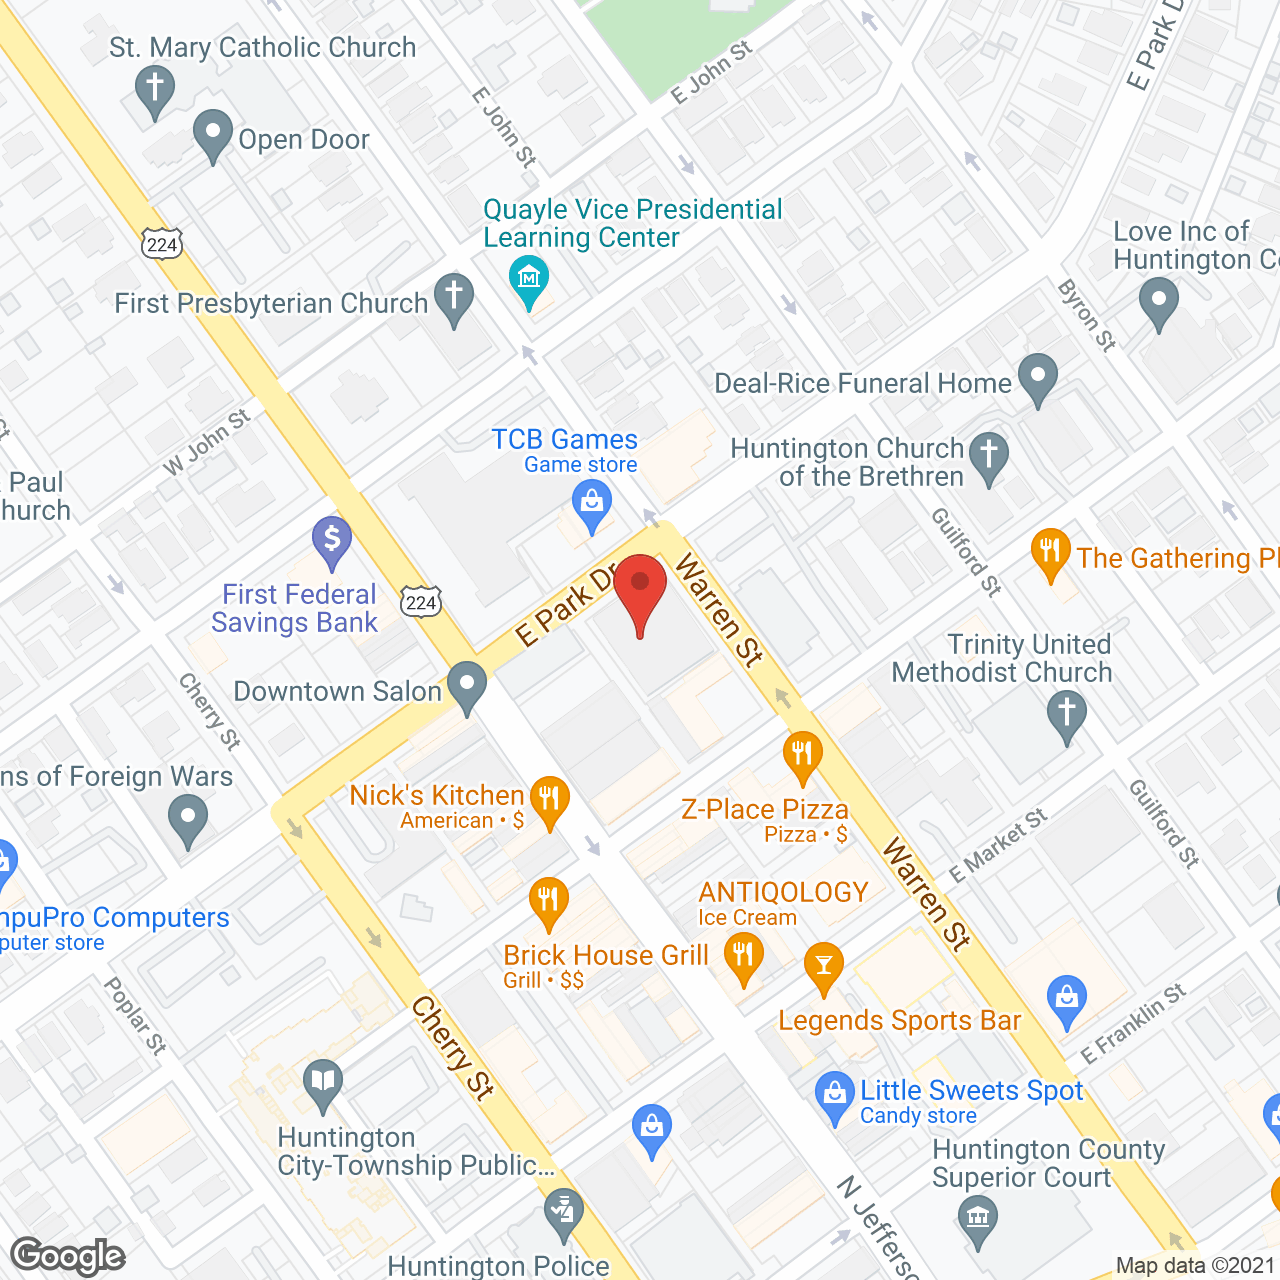 Park Lofts at Huntington in google map